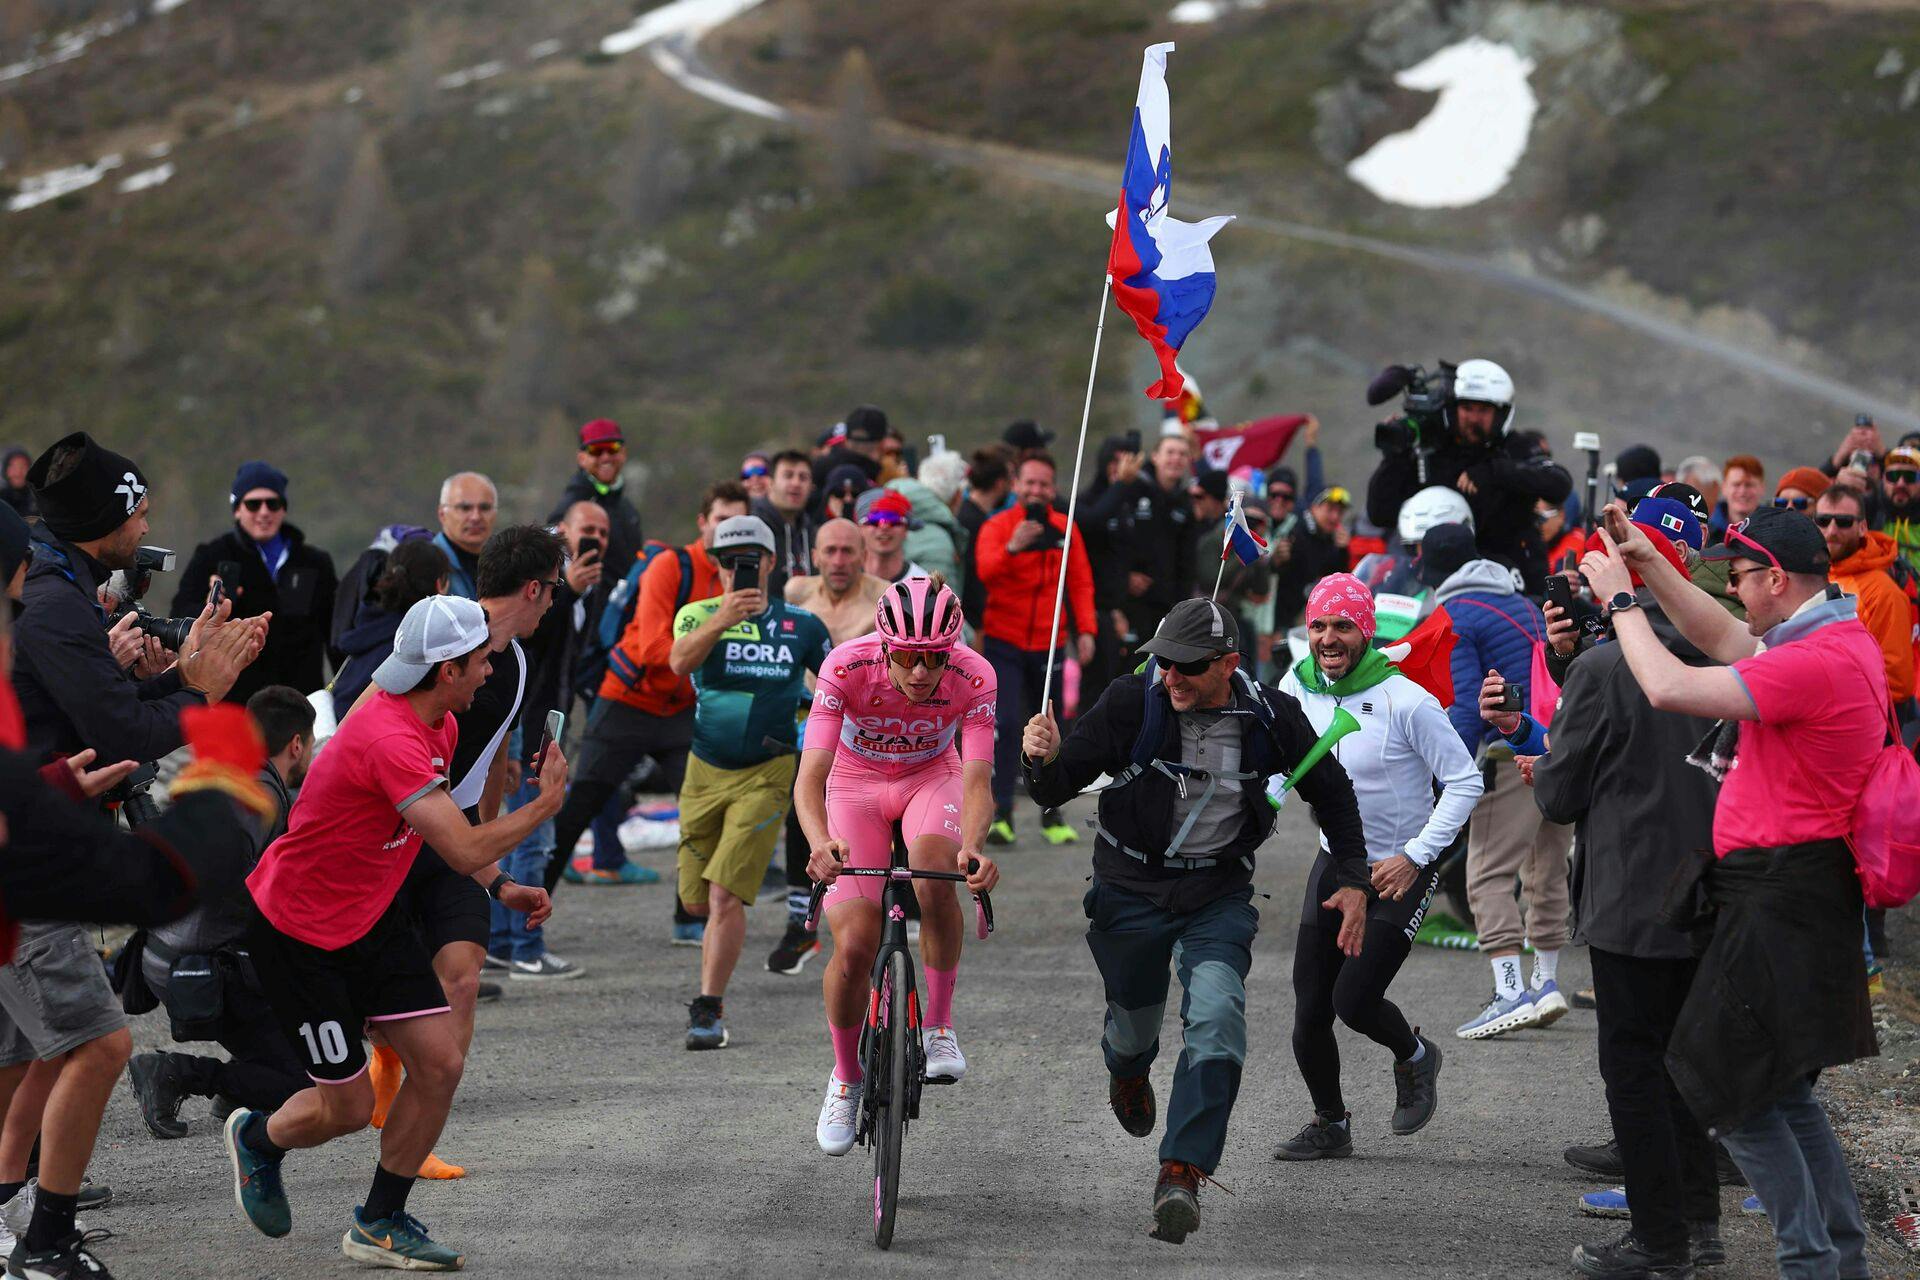 En fælles felt kræver et bjerg fjernet tirsdagens etape i Giro d'Italia af sikkerhedsmæssige årsager. Det oplyser rytterforbundet CPA i en pressemeddelelse.